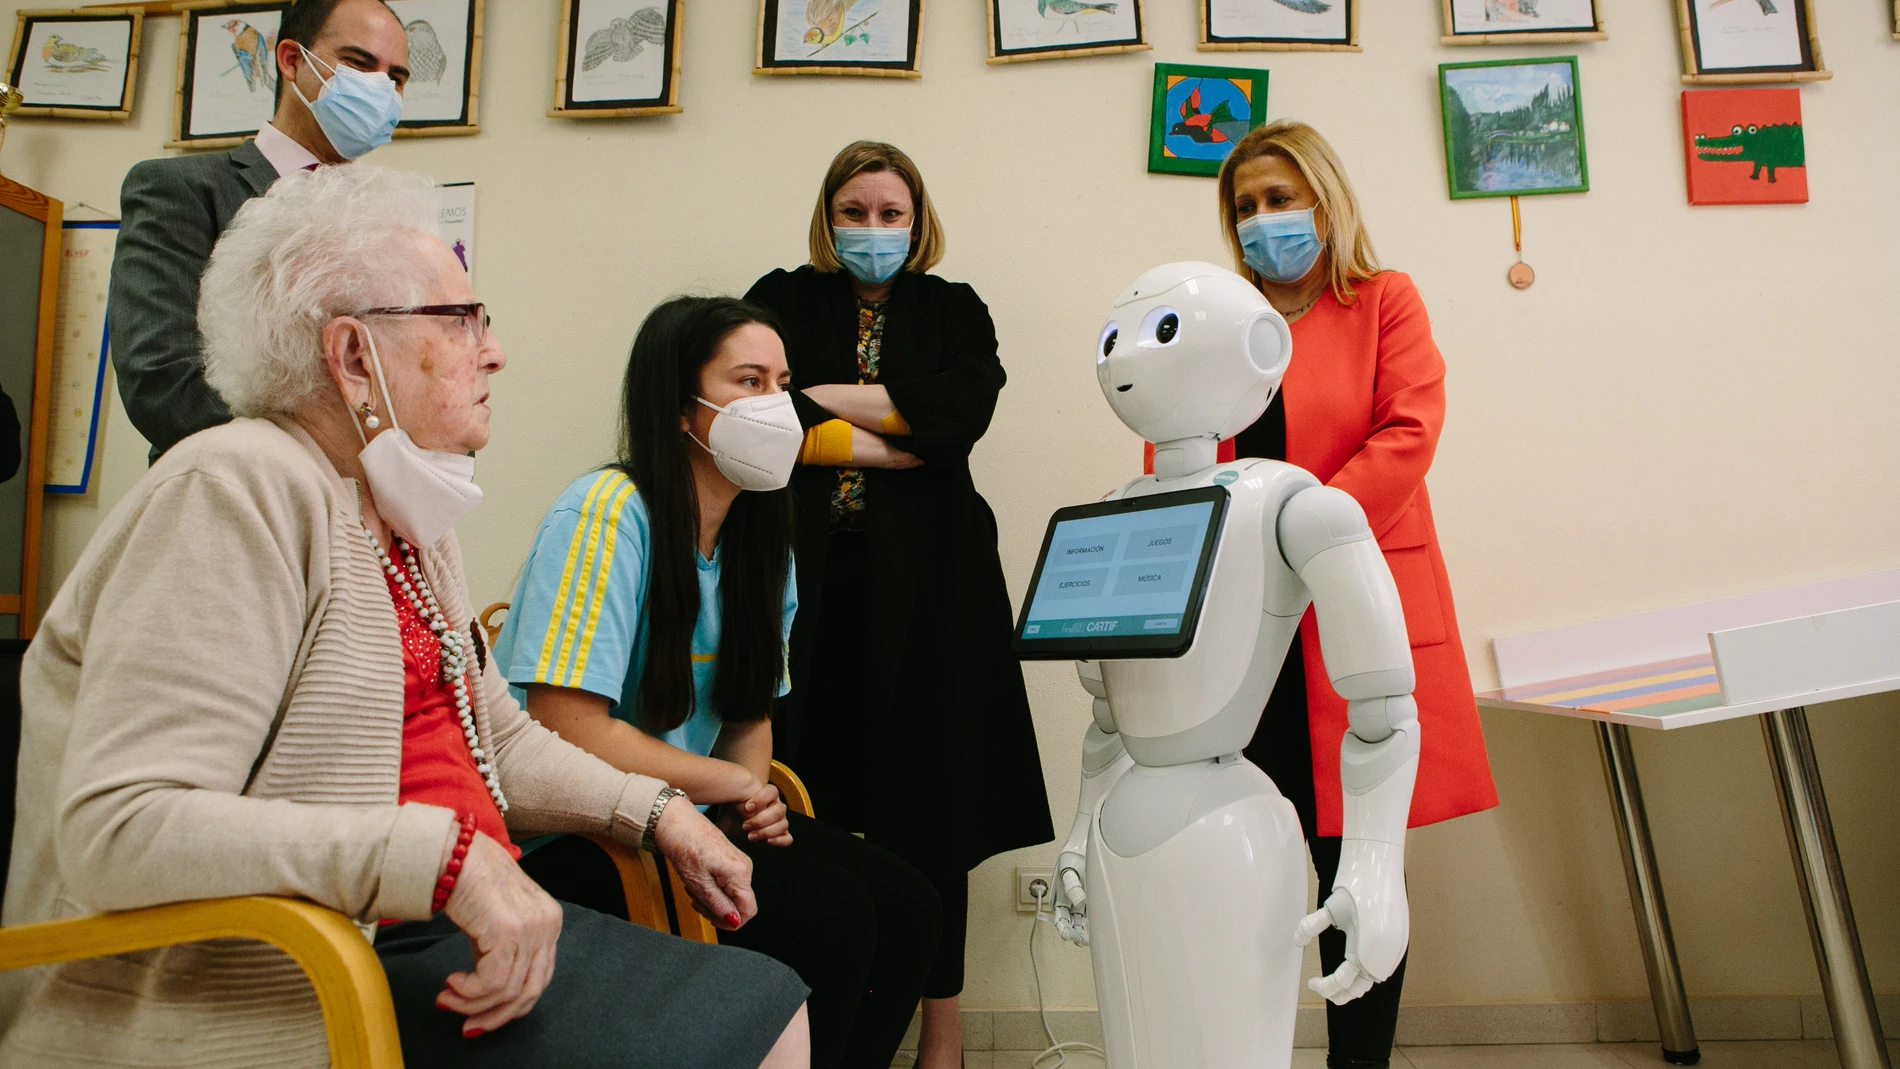 La consejera de Familia e Igualdad de Oportunidades, Isabel Blanco, presenta un proyecto piloto de innovación con robots sociales